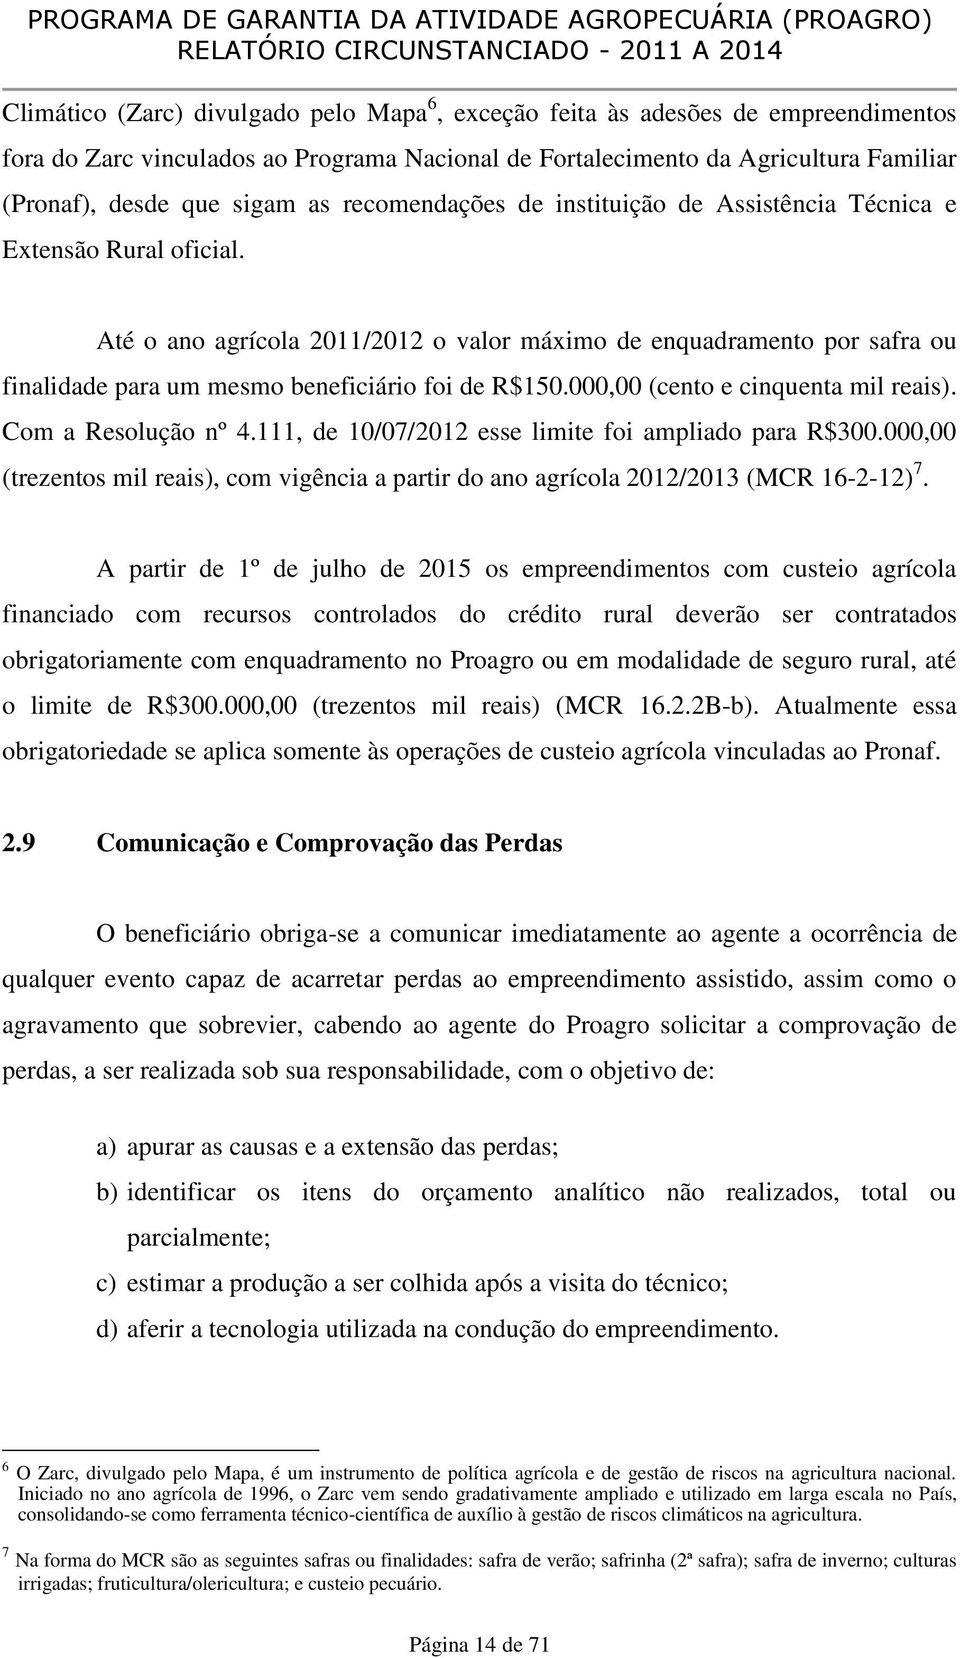 Até o ano agrícola 2011/2012 o valor máximo de enquadramento por safra ou finalidade para um mesmo beneficiário foi de R$150.000,00 (cento e cinquenta mil reais). Com a Resolução nº 4.